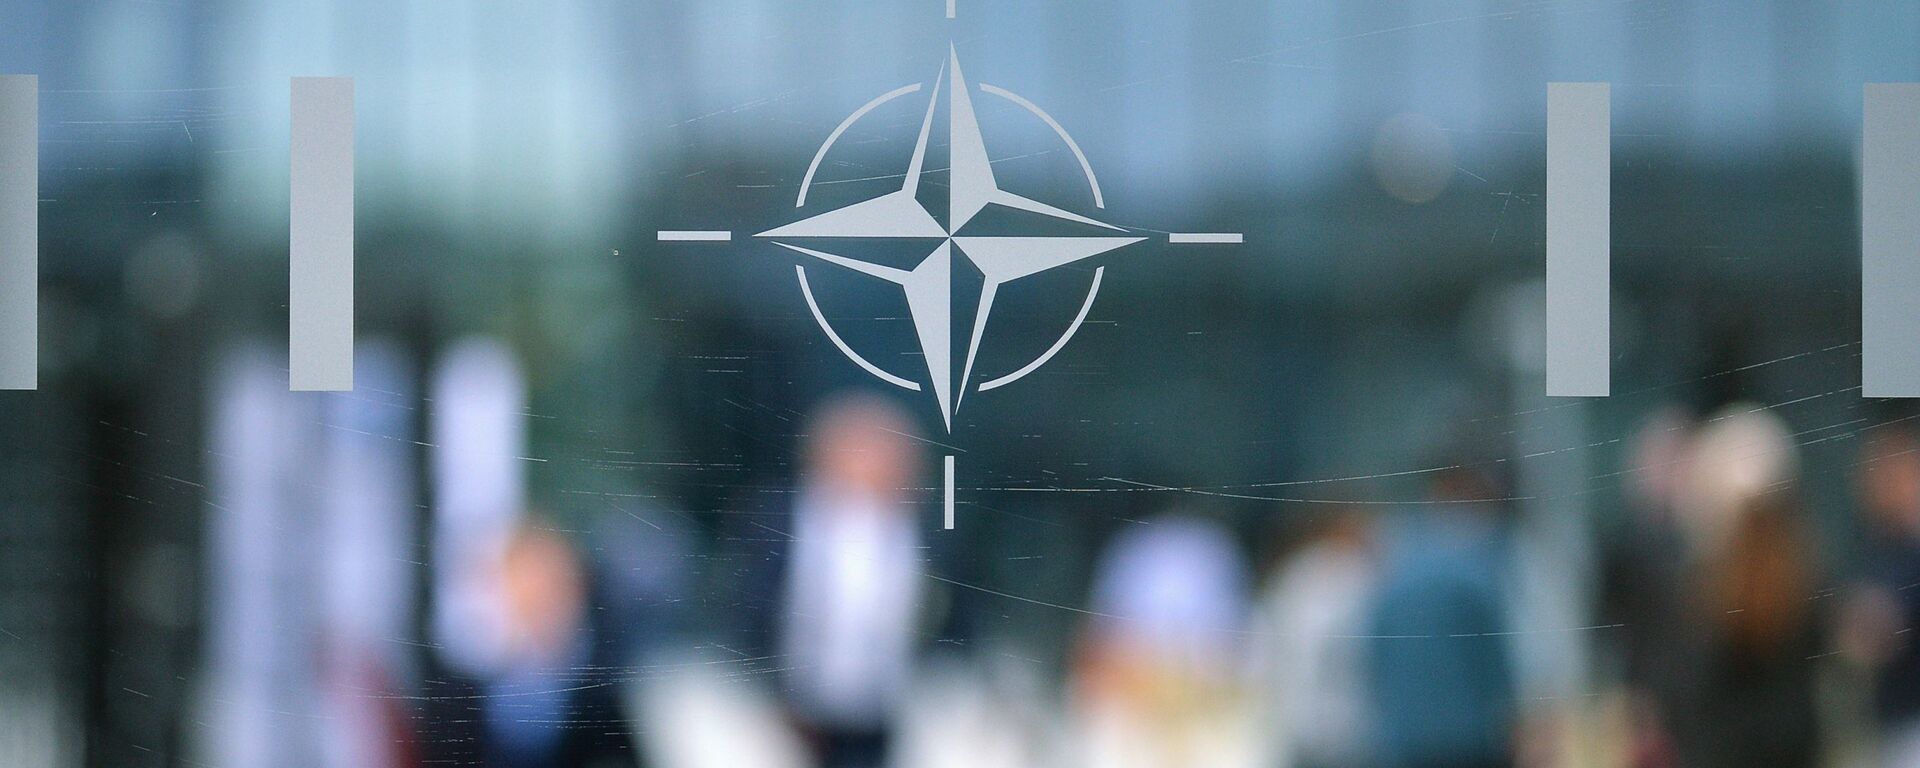 Эмблема Организации Североатлантического договора (НАТО) в Брюсселе.   - Sputnik Абхазия, 1920, 16.06.2021